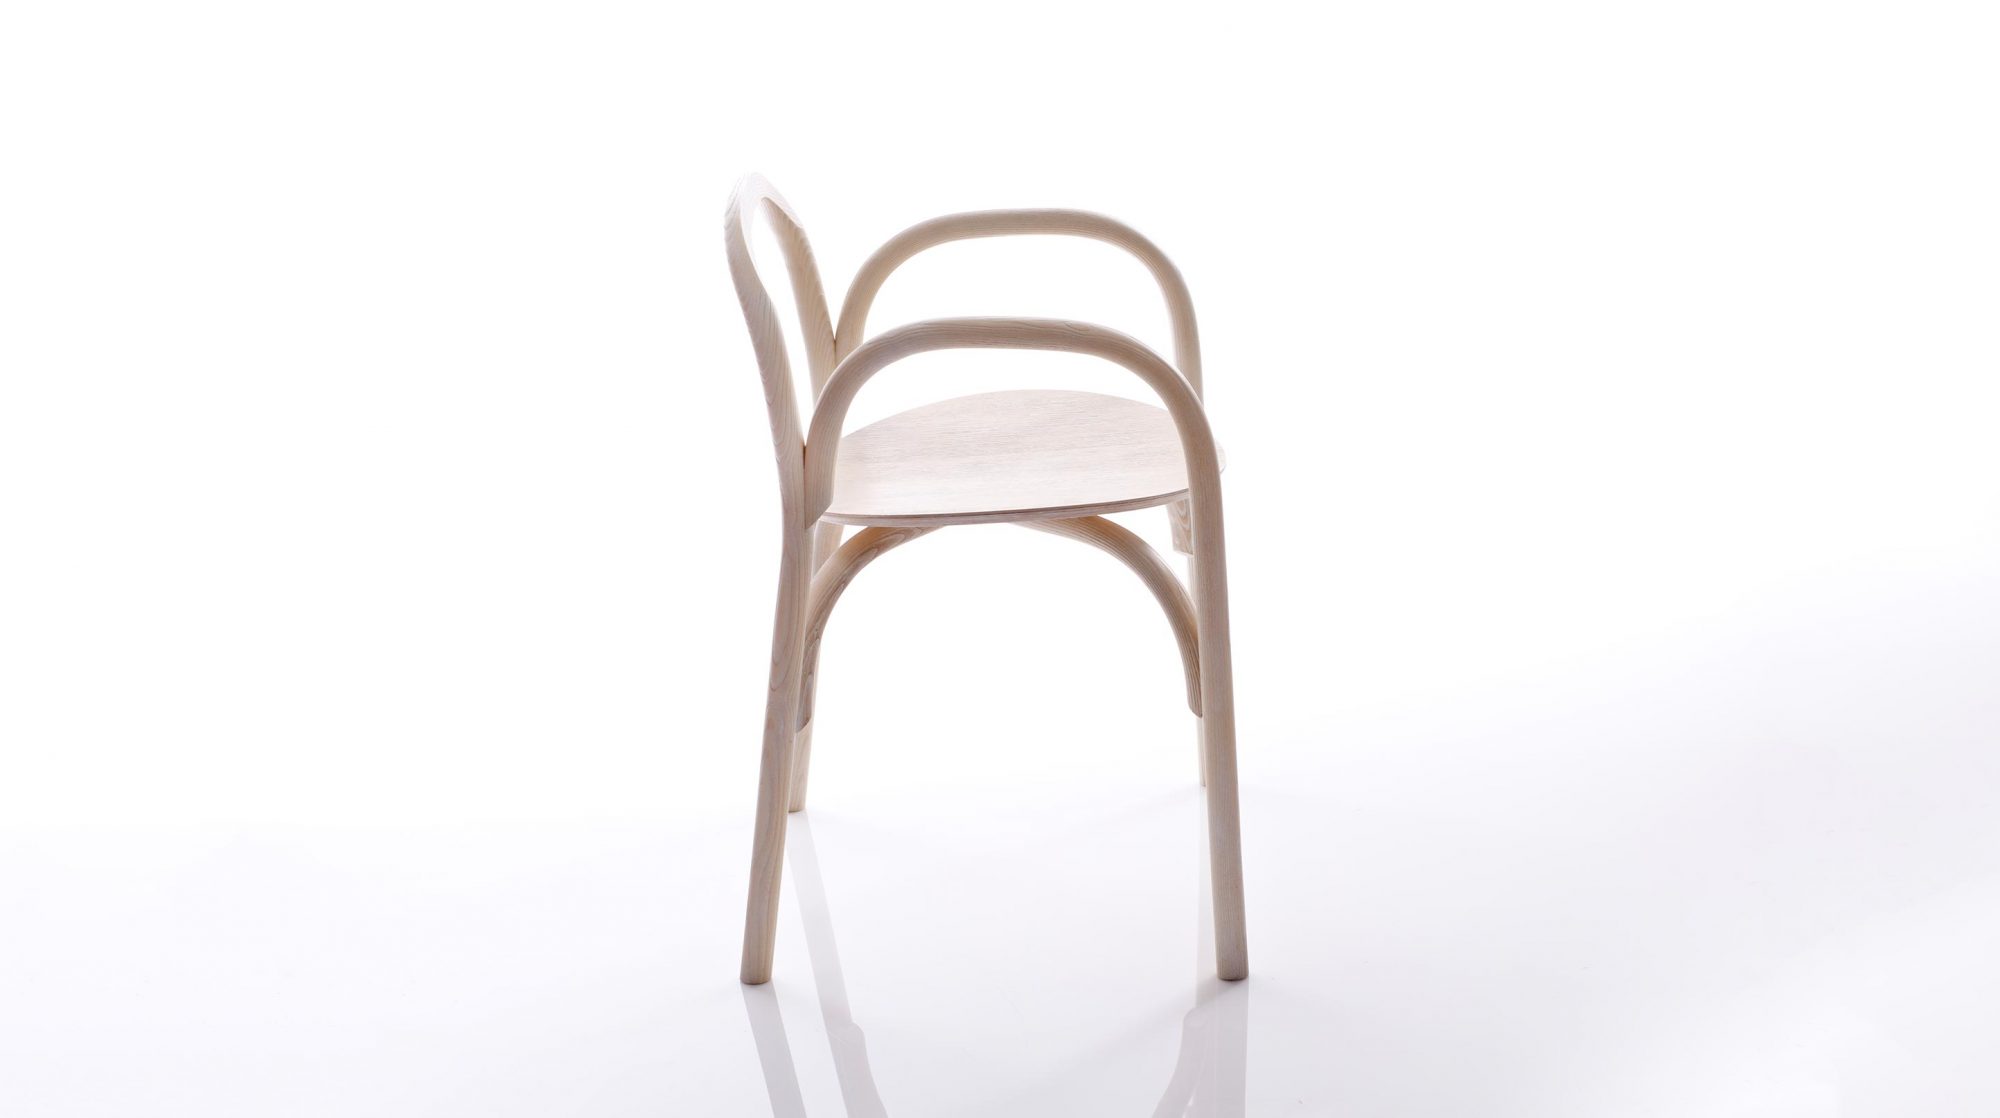 Brace Chair by Samuel Wilkinson